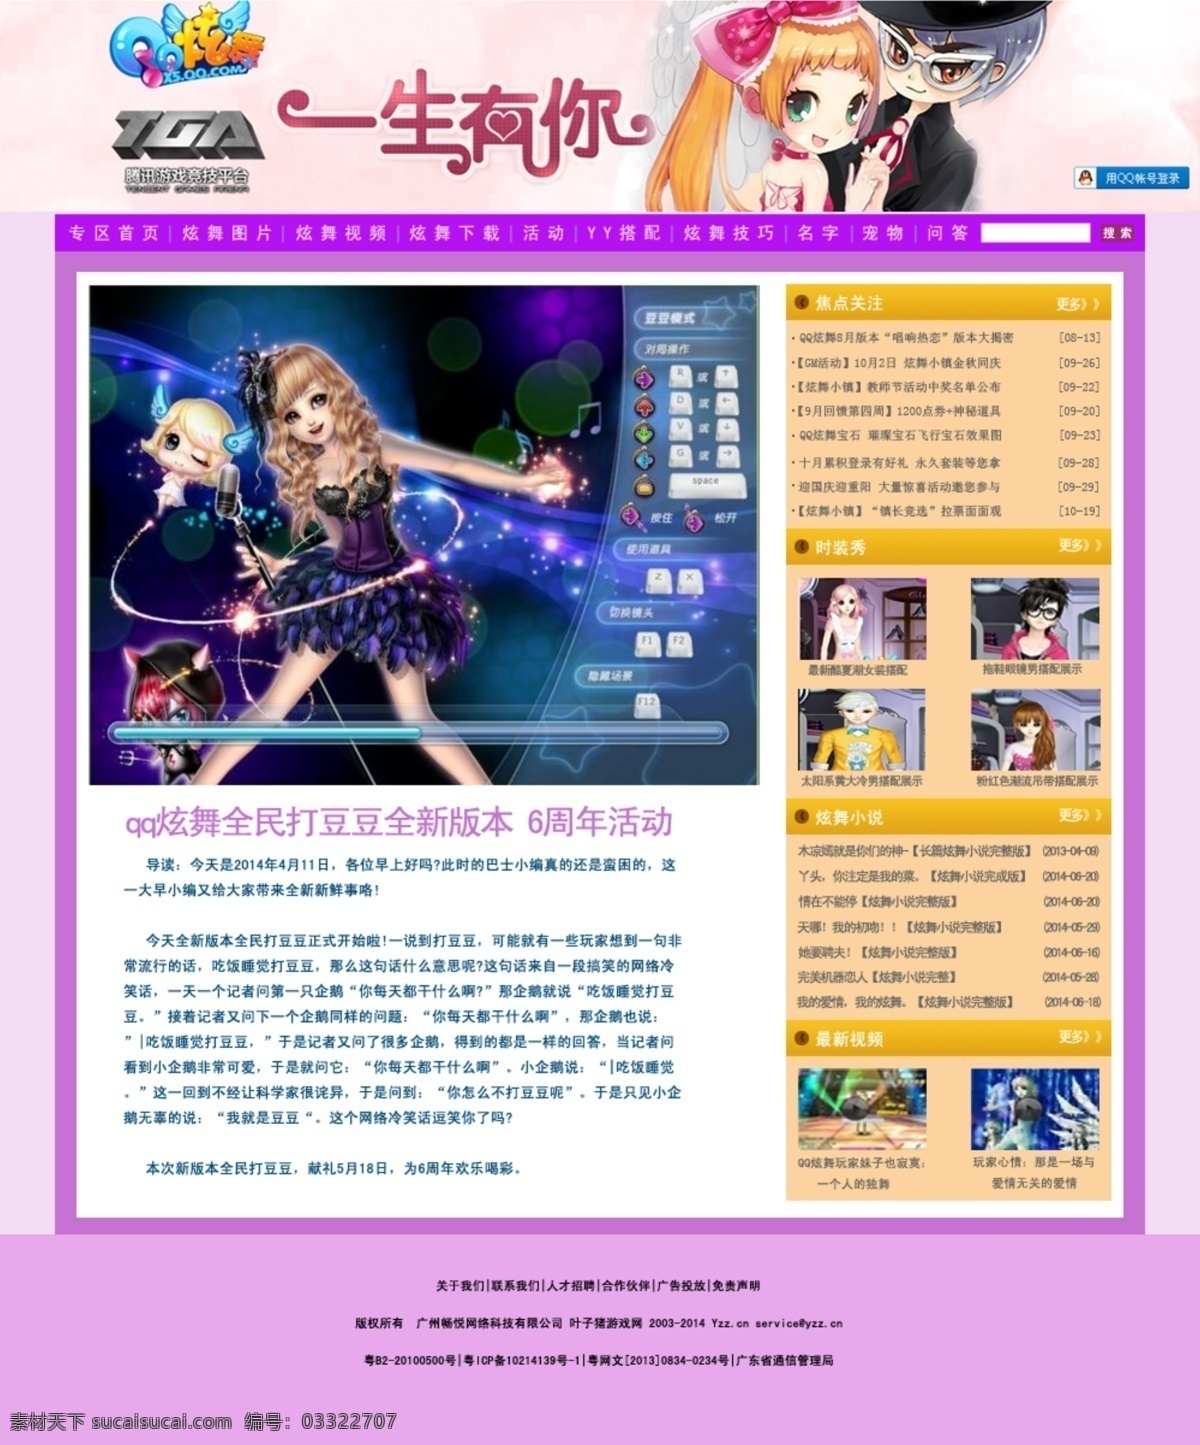 炫舞网页设计 网页 淘宝素材 淘宝设计 淘宝模板下载 白色